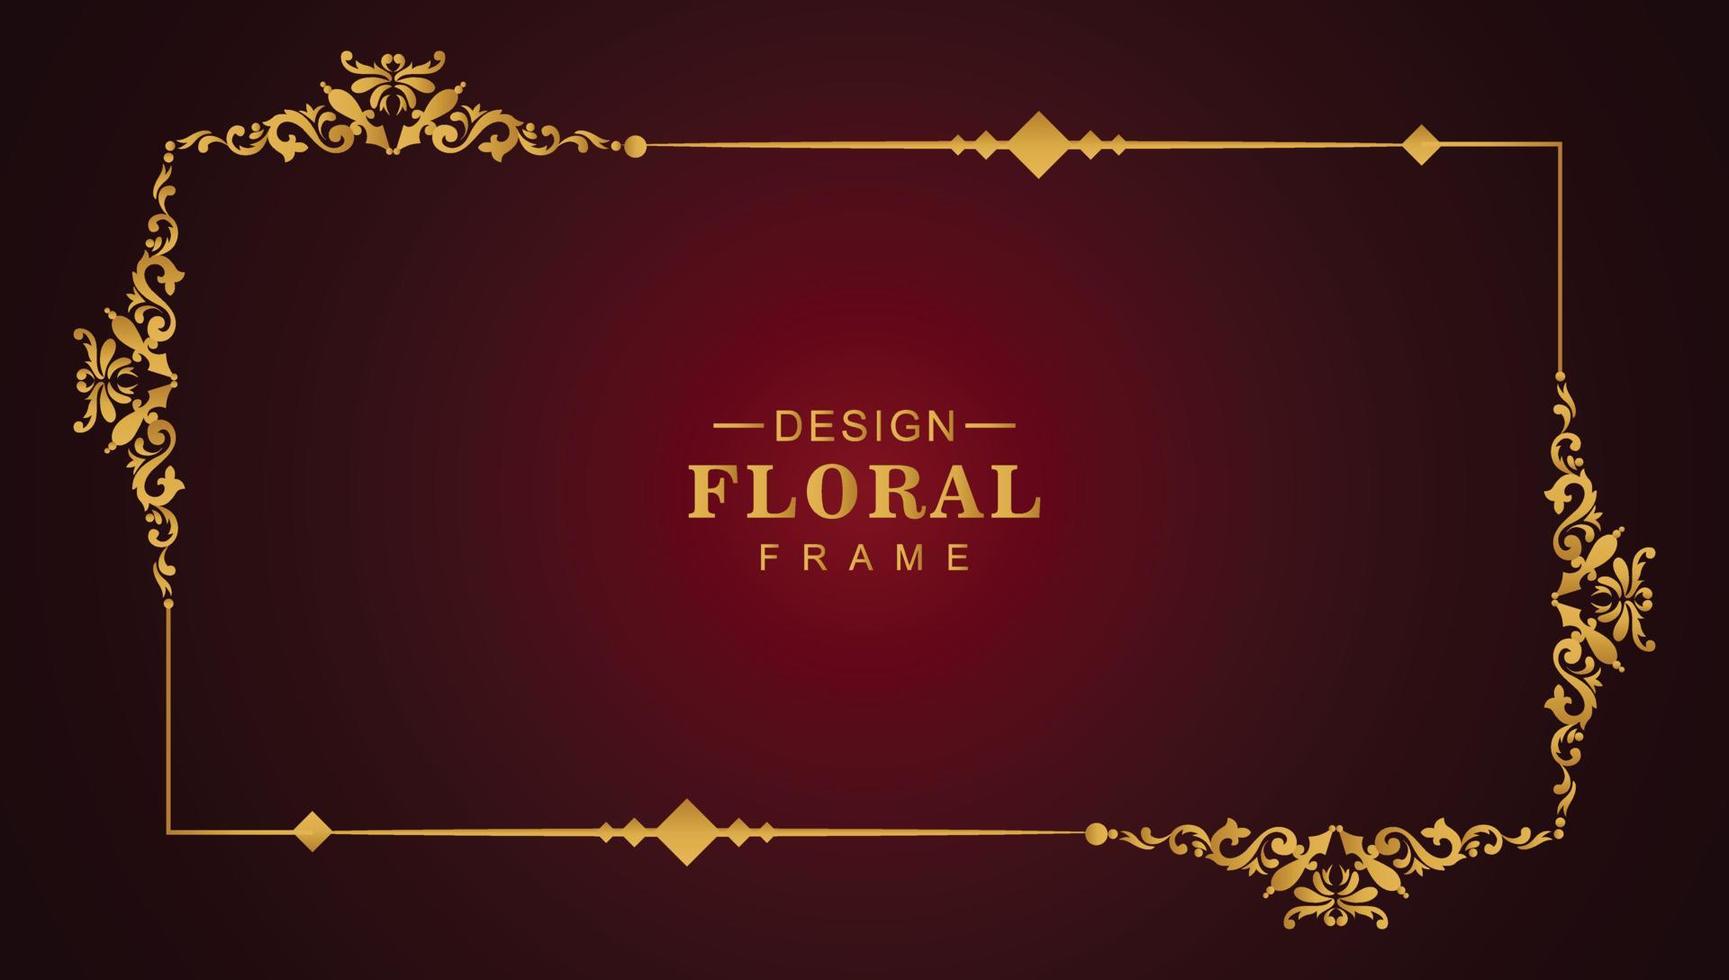 Luxury golden floral frame illustration design vector